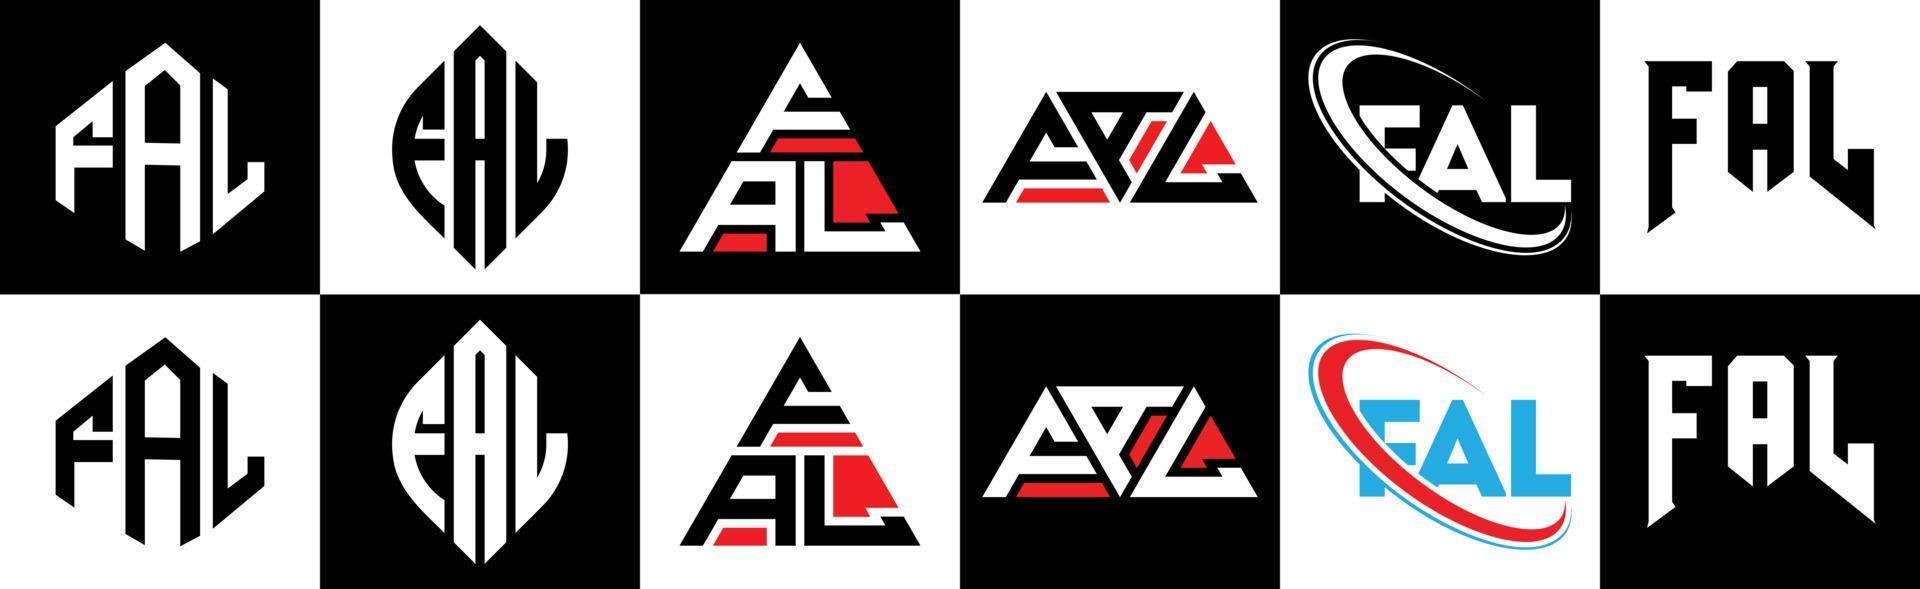 fal-Buchstaben-Logo-Design in sechs Stilen. fal polygon, kreis, dreieck, sechseck, flacher und einfacher stil mit schwarz-weißem buchstabenlogo in einer zeichenfläche. fal minimalistisches und klassisches Logo vektor